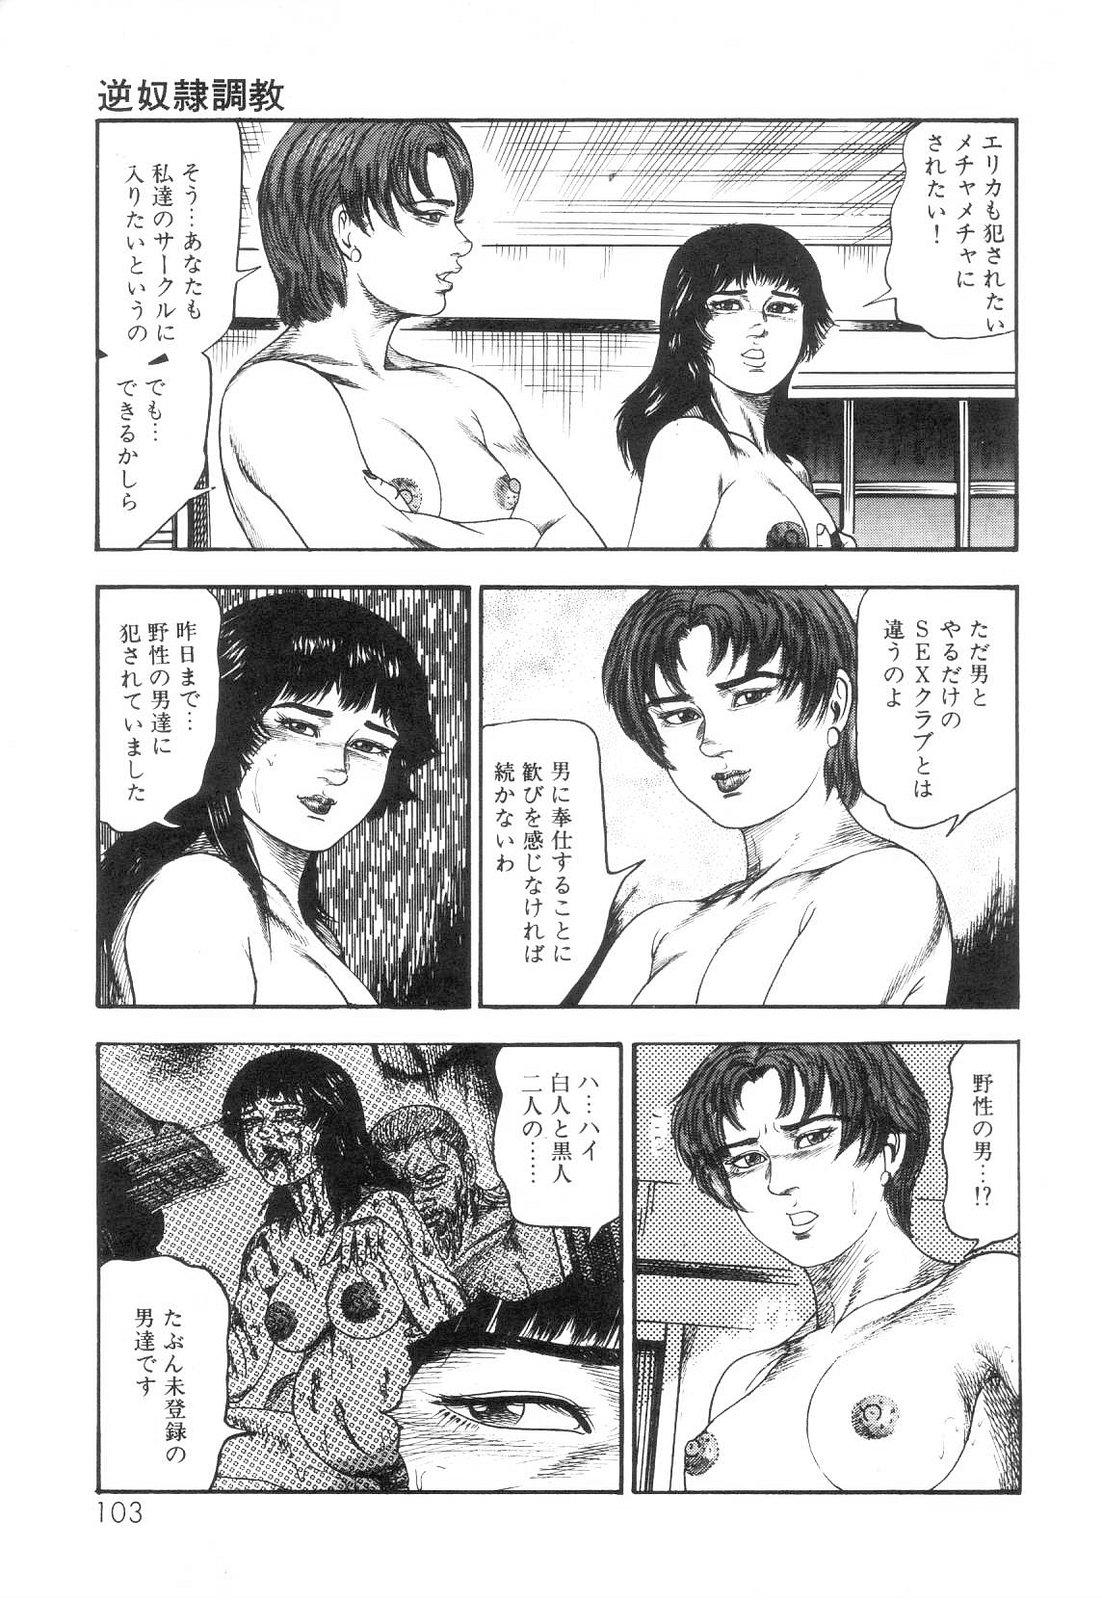 Shiro no Mokushiroku Vol. 6 - Juuai Erika no Shou 104